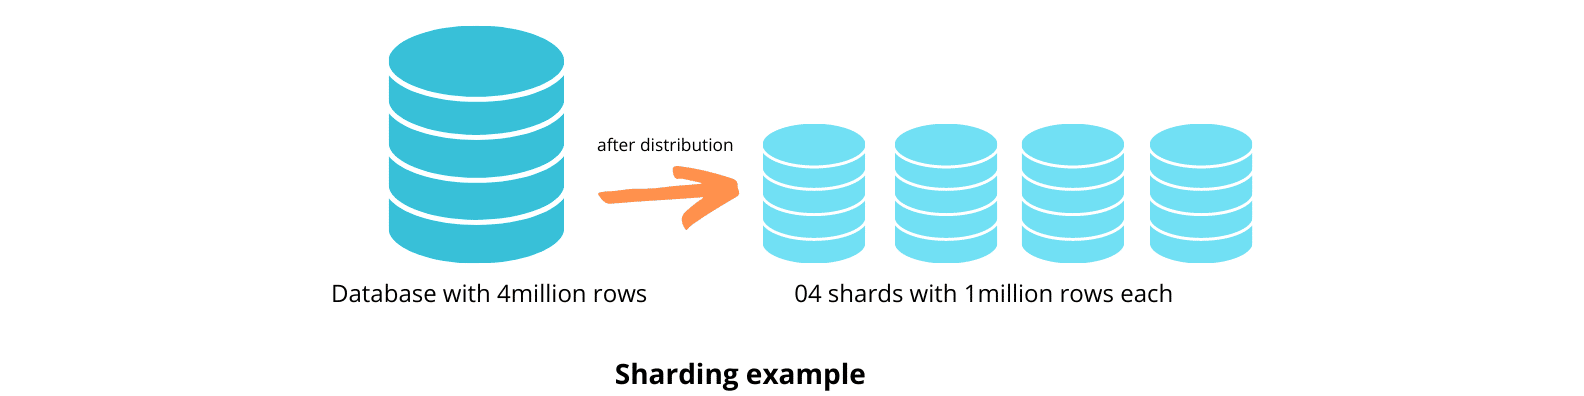 An illustration to explain database sharding.